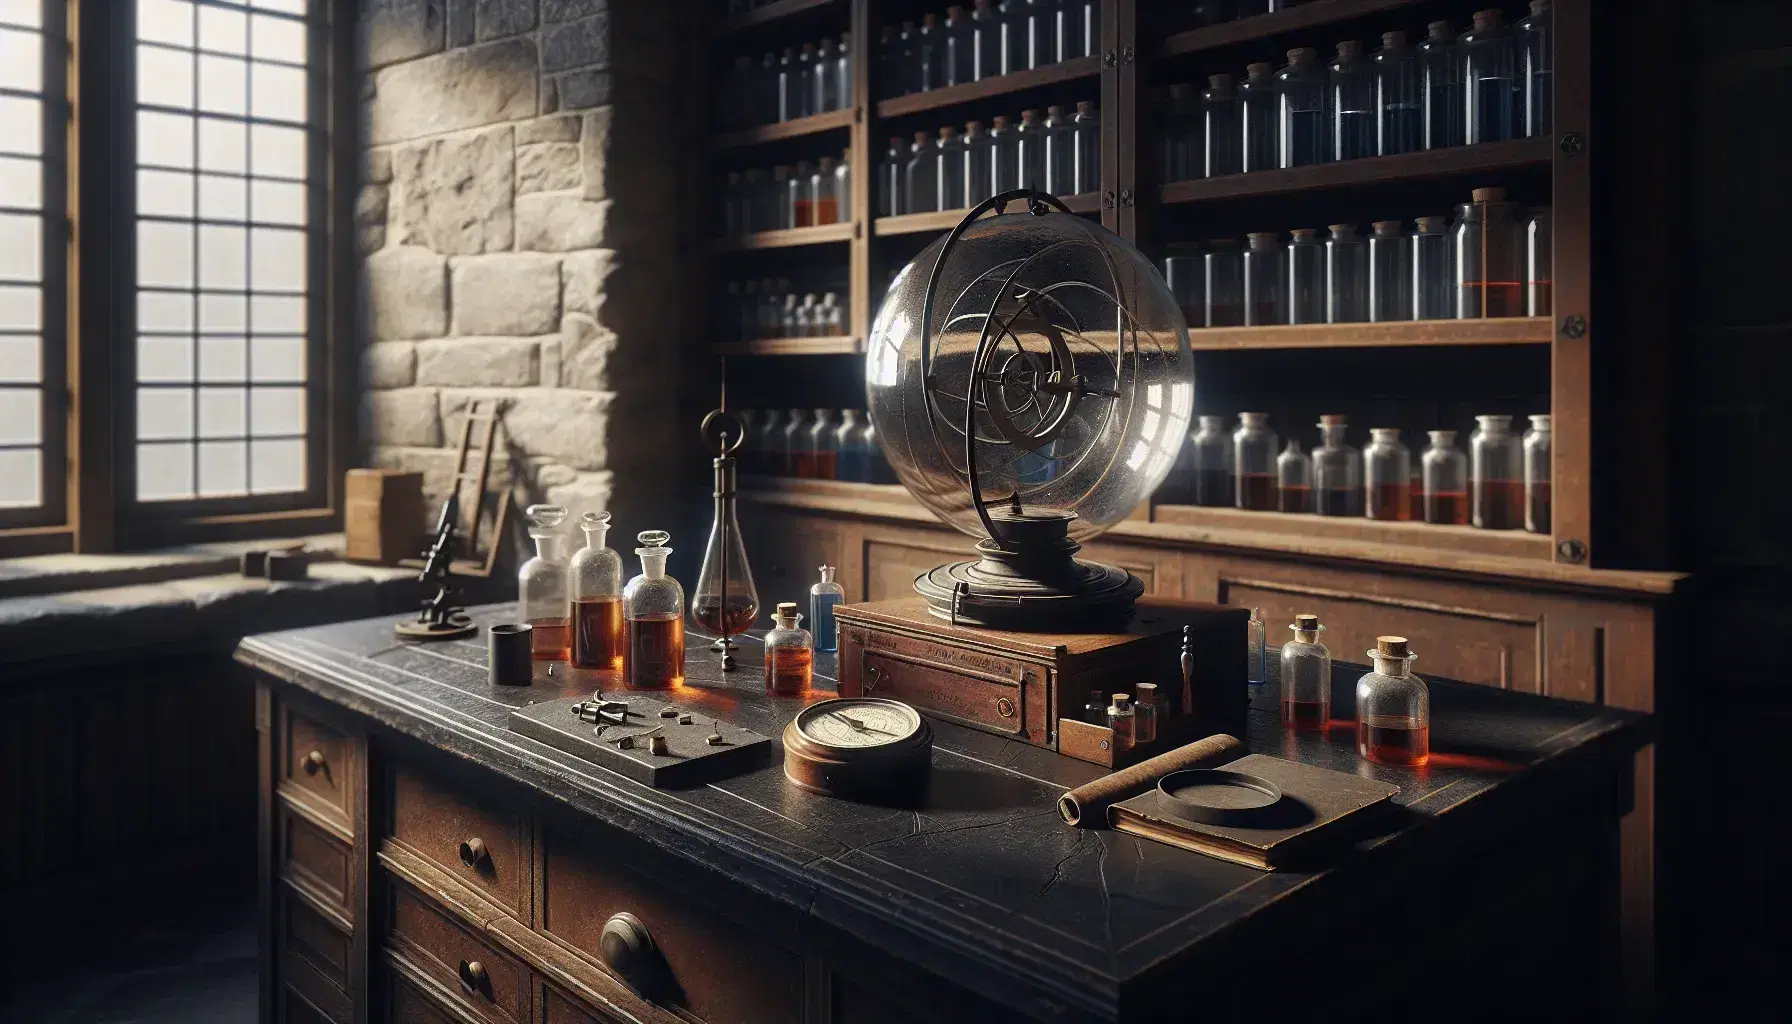 Laboratorio antiguo con paredes de piedra y estantes de madera, mesa con esfera de Van de Graaff y brújula, frascos de colores y libros apilados bajo luz natural.